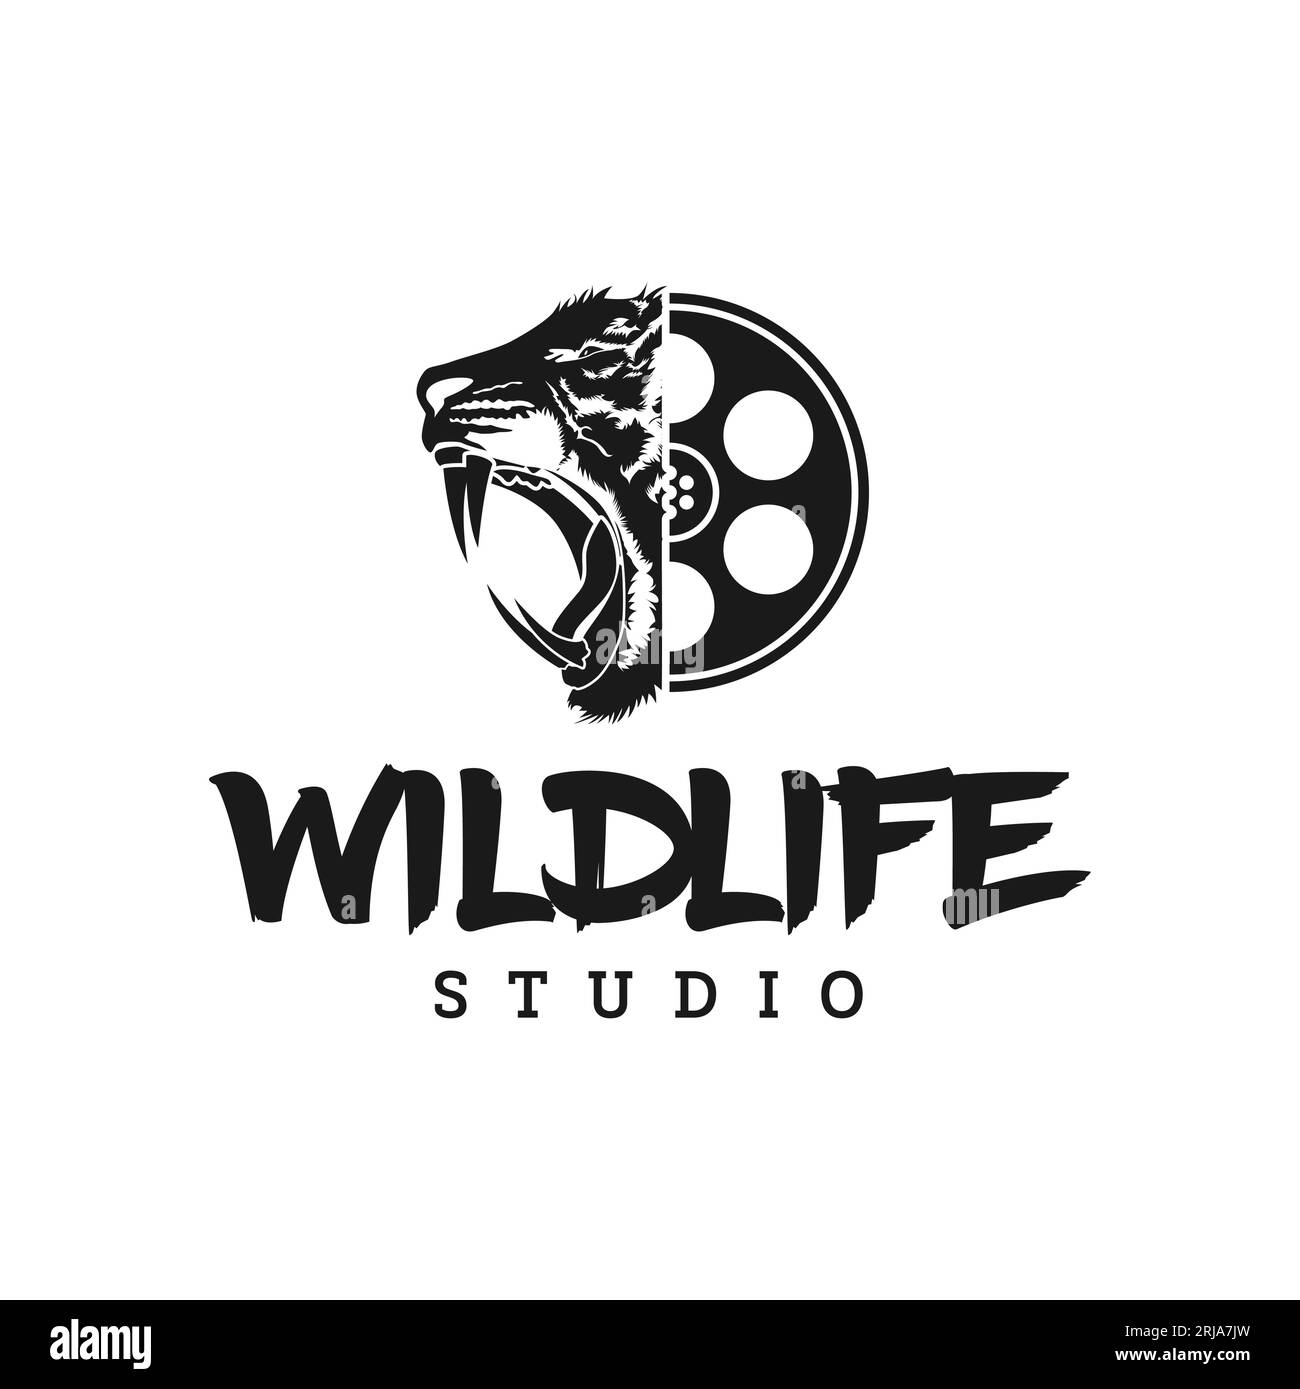 https://c8.alamy.com/comp/2RJA7JW/film-reel-and-roaring-tiger-logo-for-film-production-design-inspiration-2RJA7JW.jpg